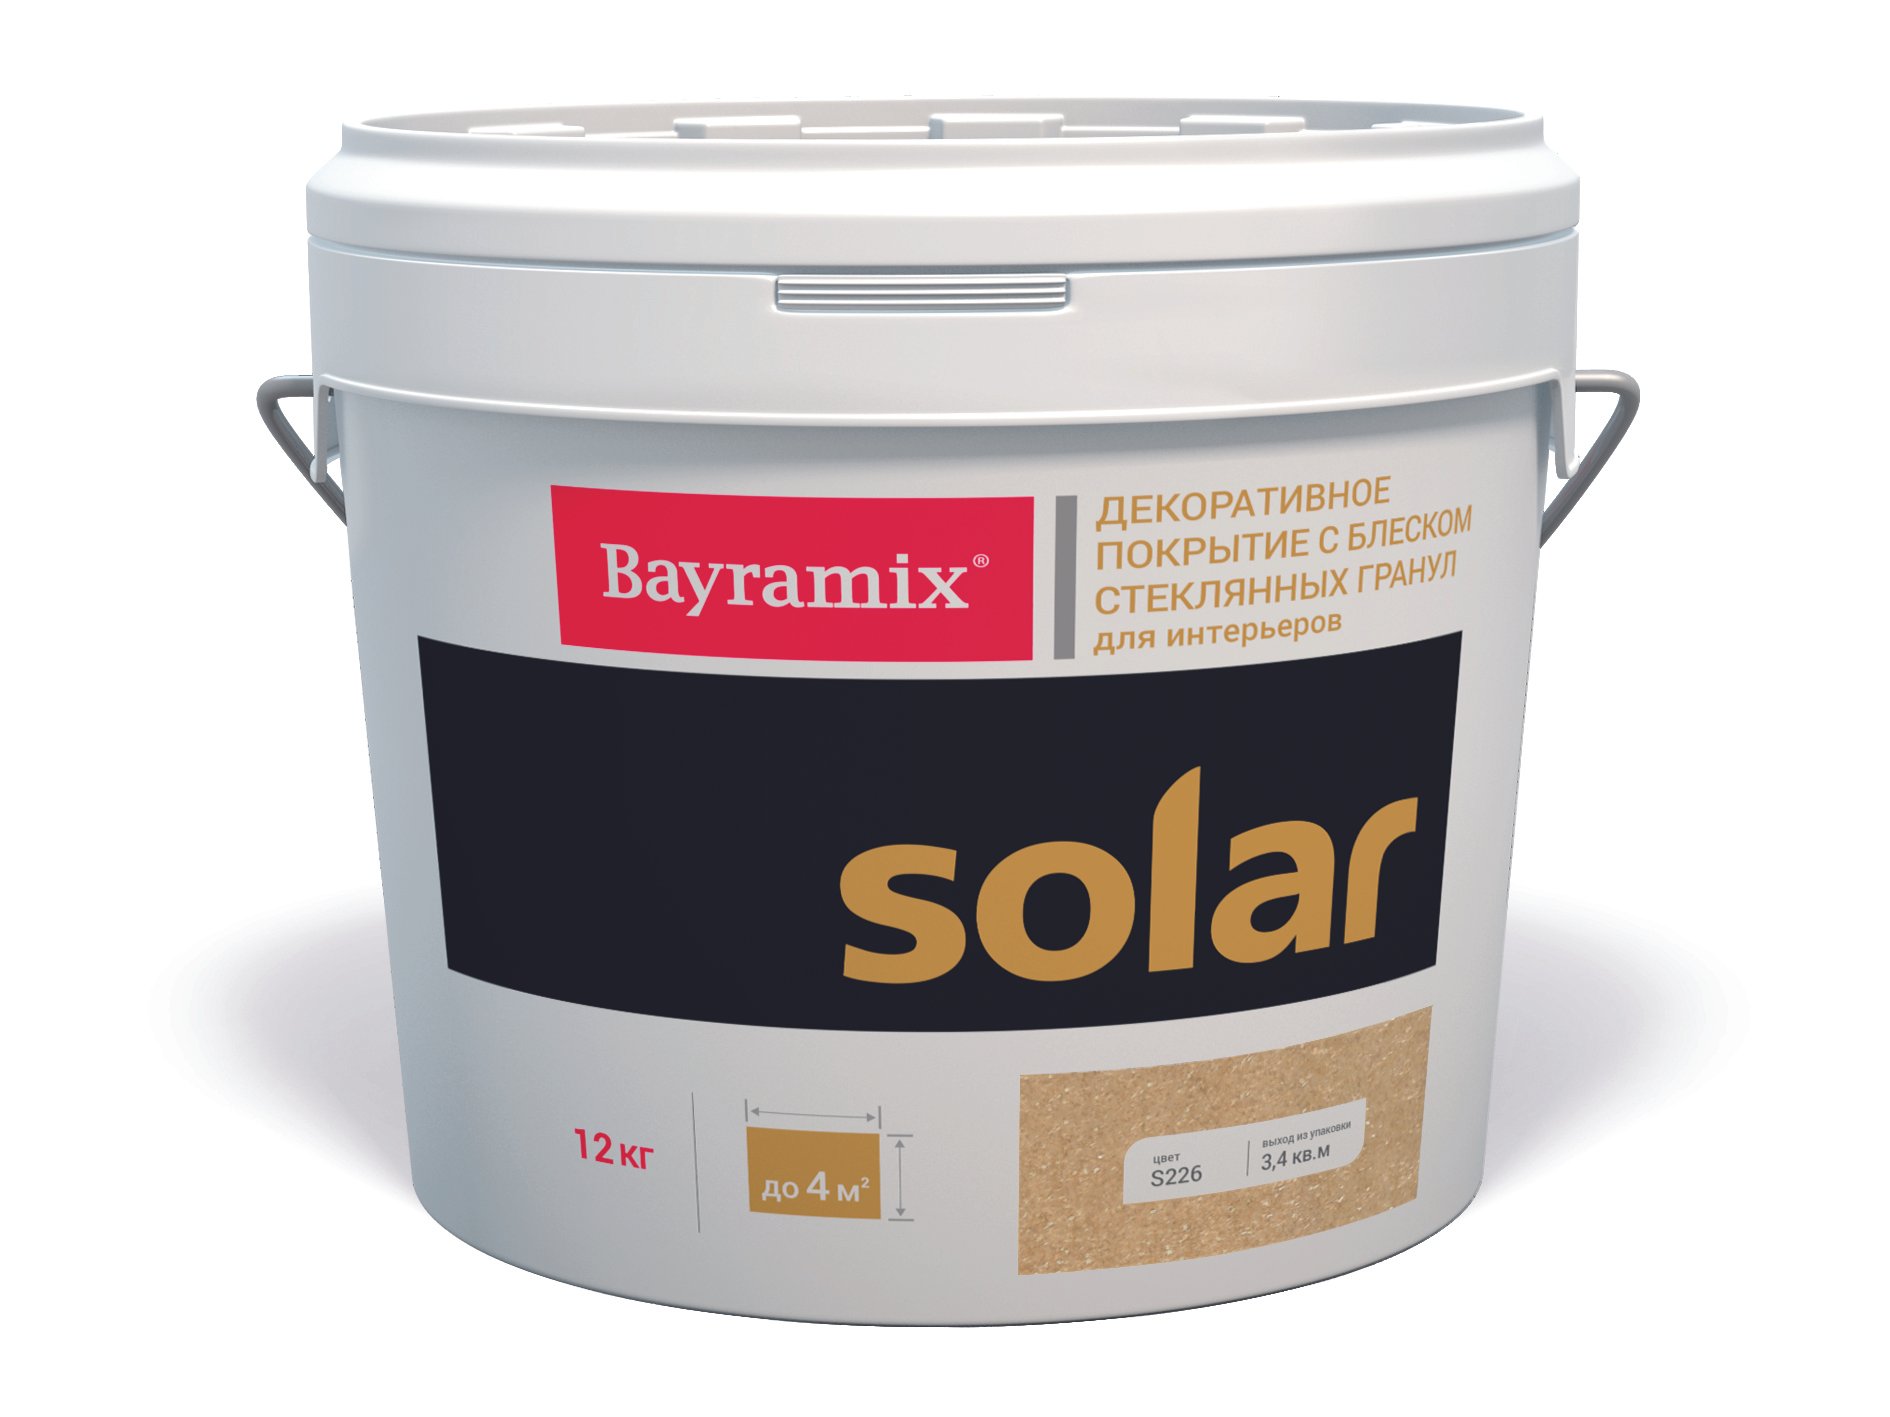 Декоративная шукатурка со стекл. гранулами Bayramix Solar S261 миндаль, 12 кг грунтовка bayramix астар кварцевый 15 кг bak 15